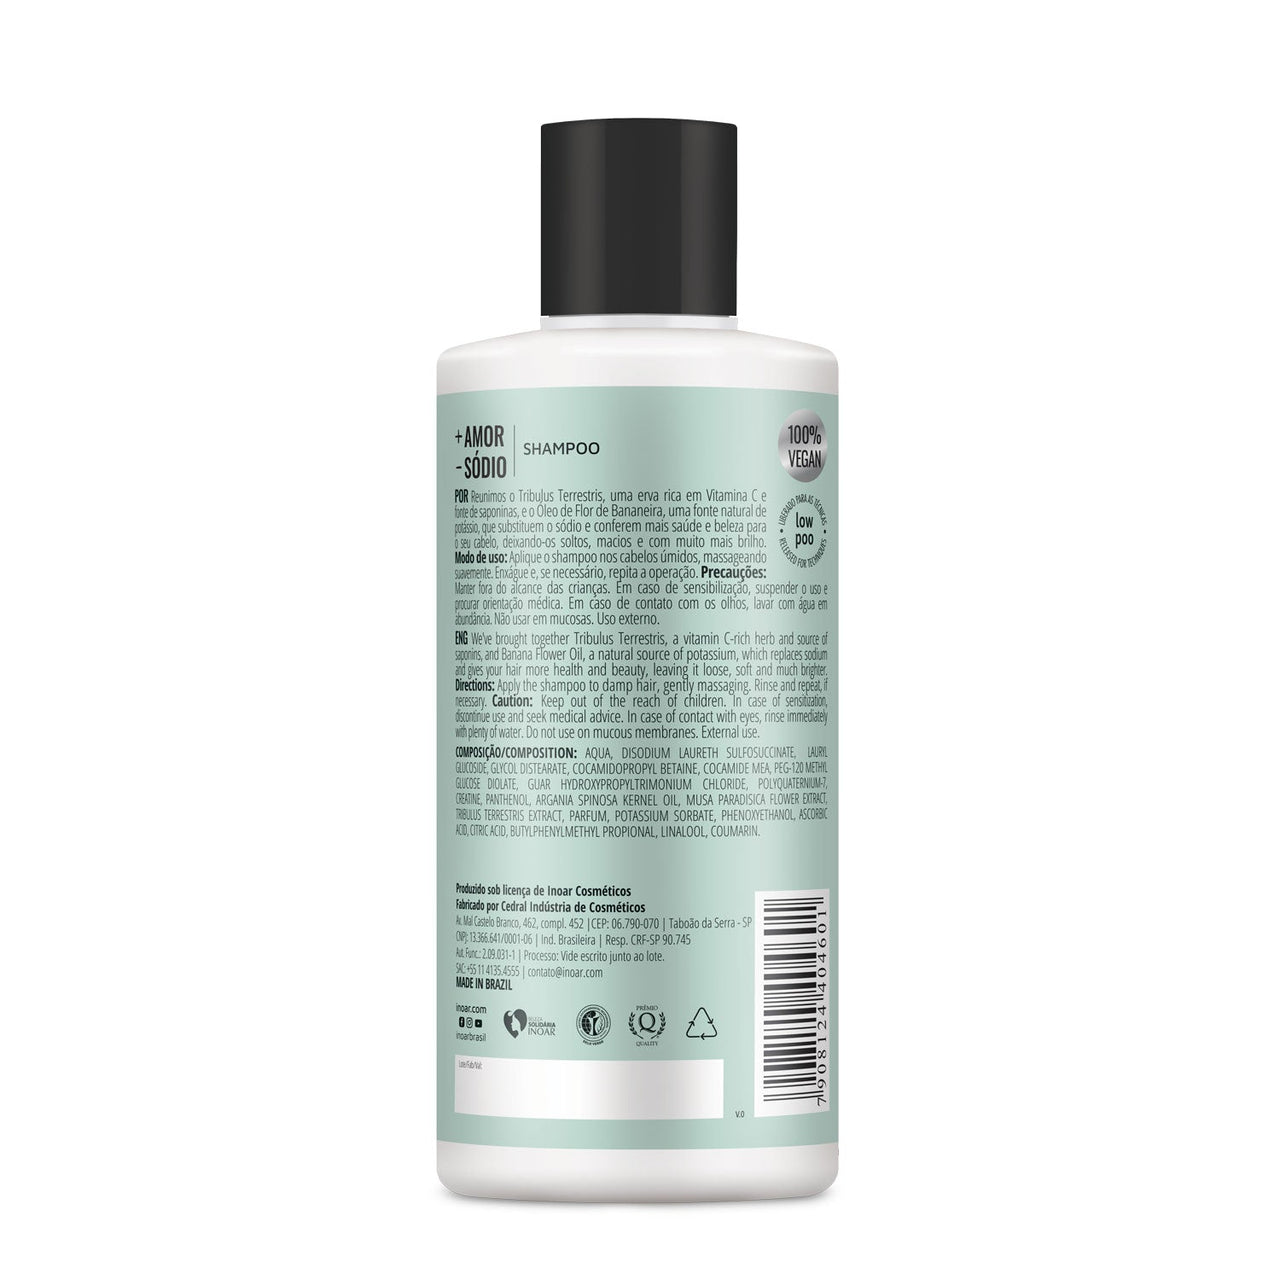 INOAR More Love Less Salt Shampoo – šampūnas be druskų 400 ml